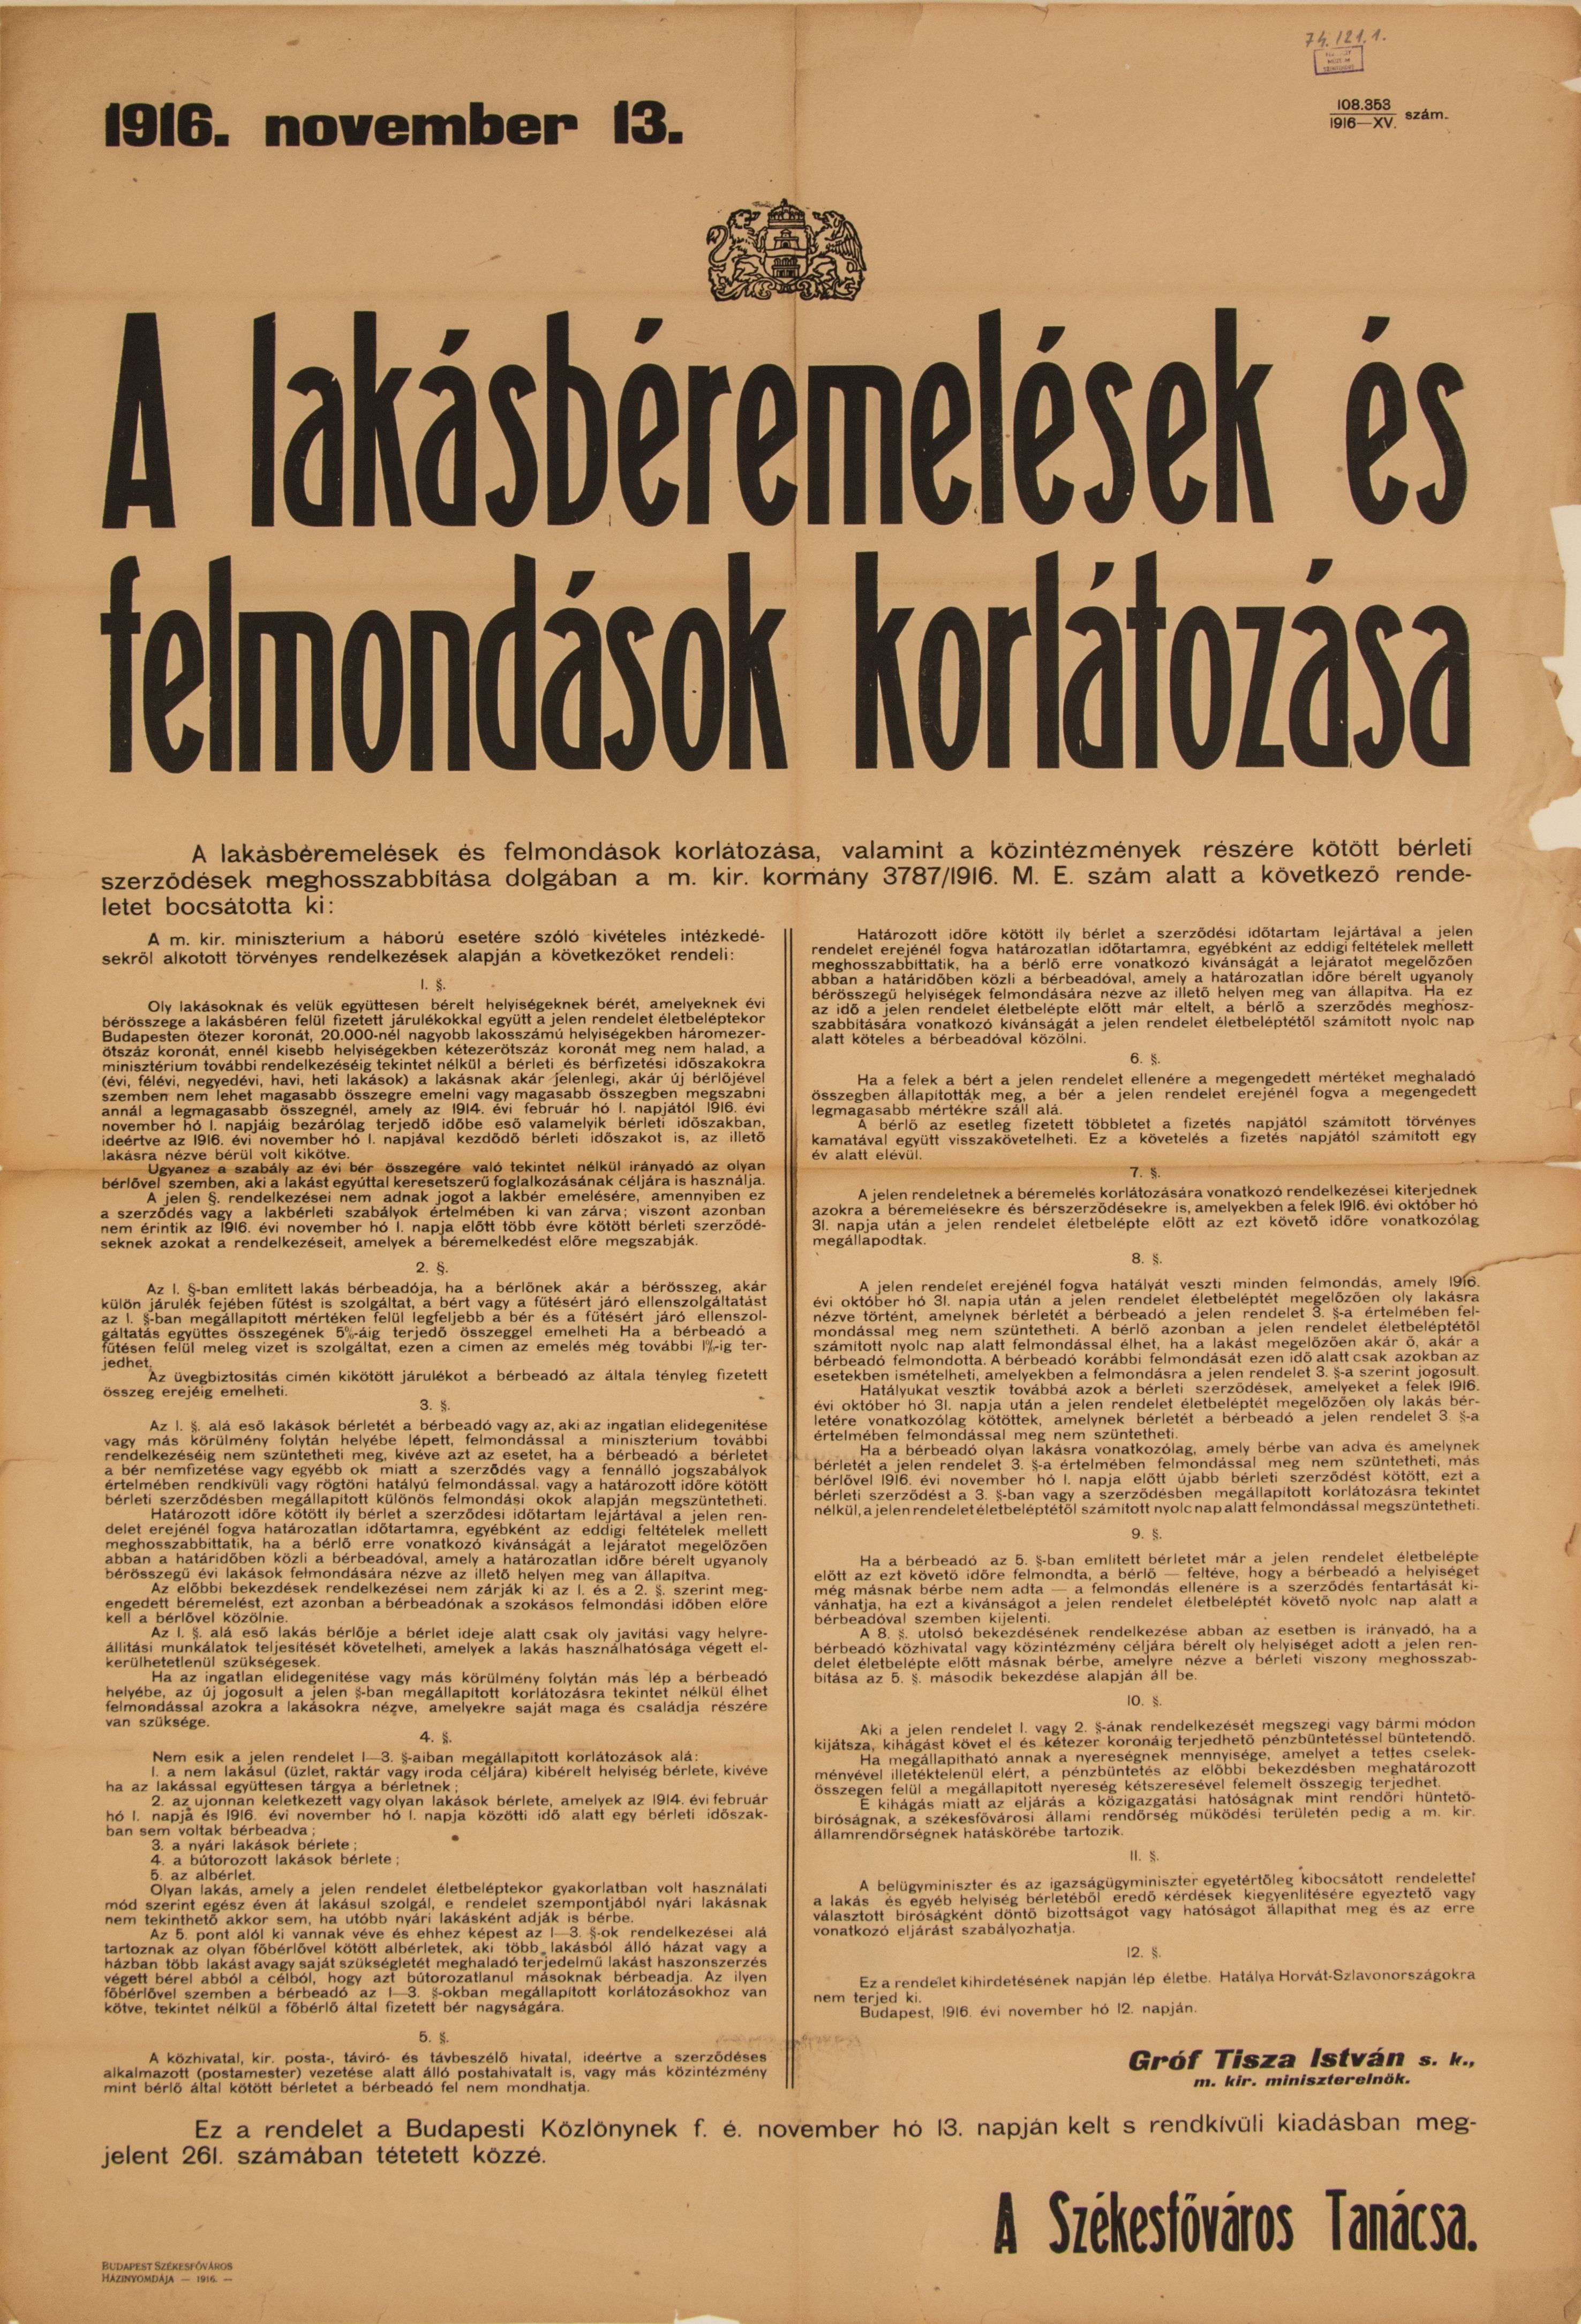 Lakásbéremelések és felmondások korlátozása, 1916.11.13. (Ferenczy Múzeumi Centrum CC BY-NC-SA)